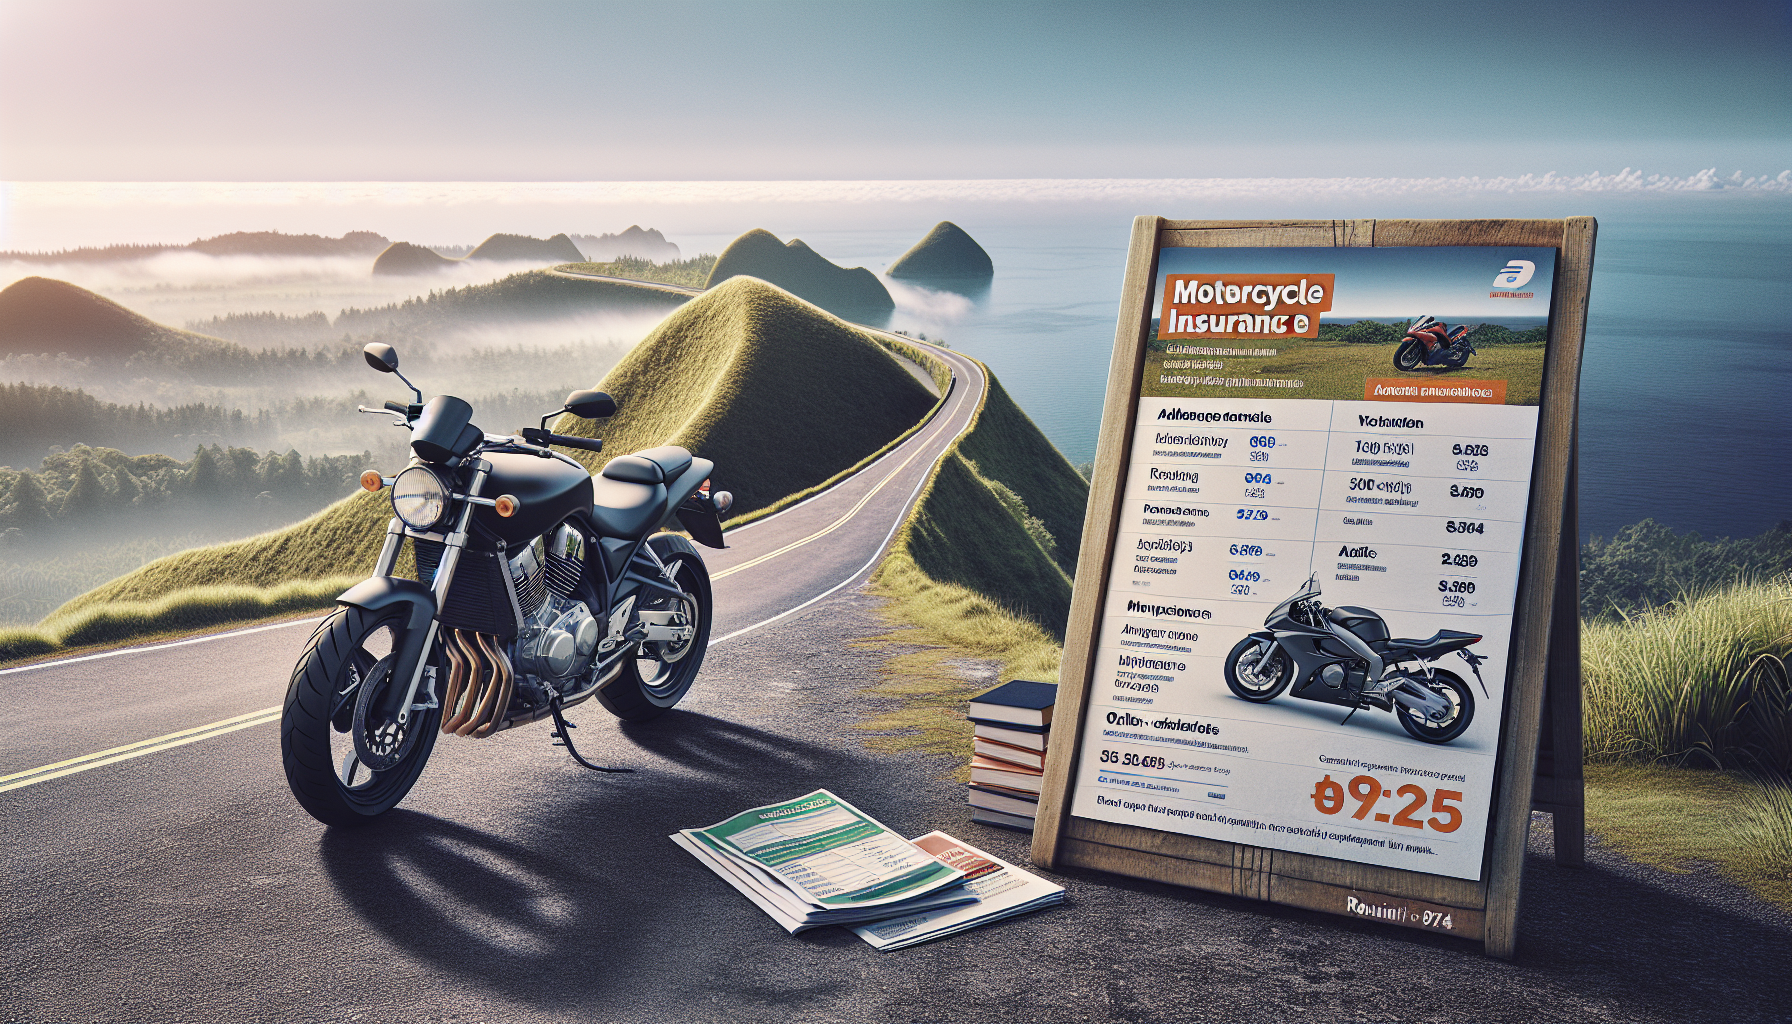 comparez facilement les devis d'assurance moto en ligne à la réunion avec assurance moto 974. trouvez la meilleure offre d'assurance pour votre moto en quelques clics.